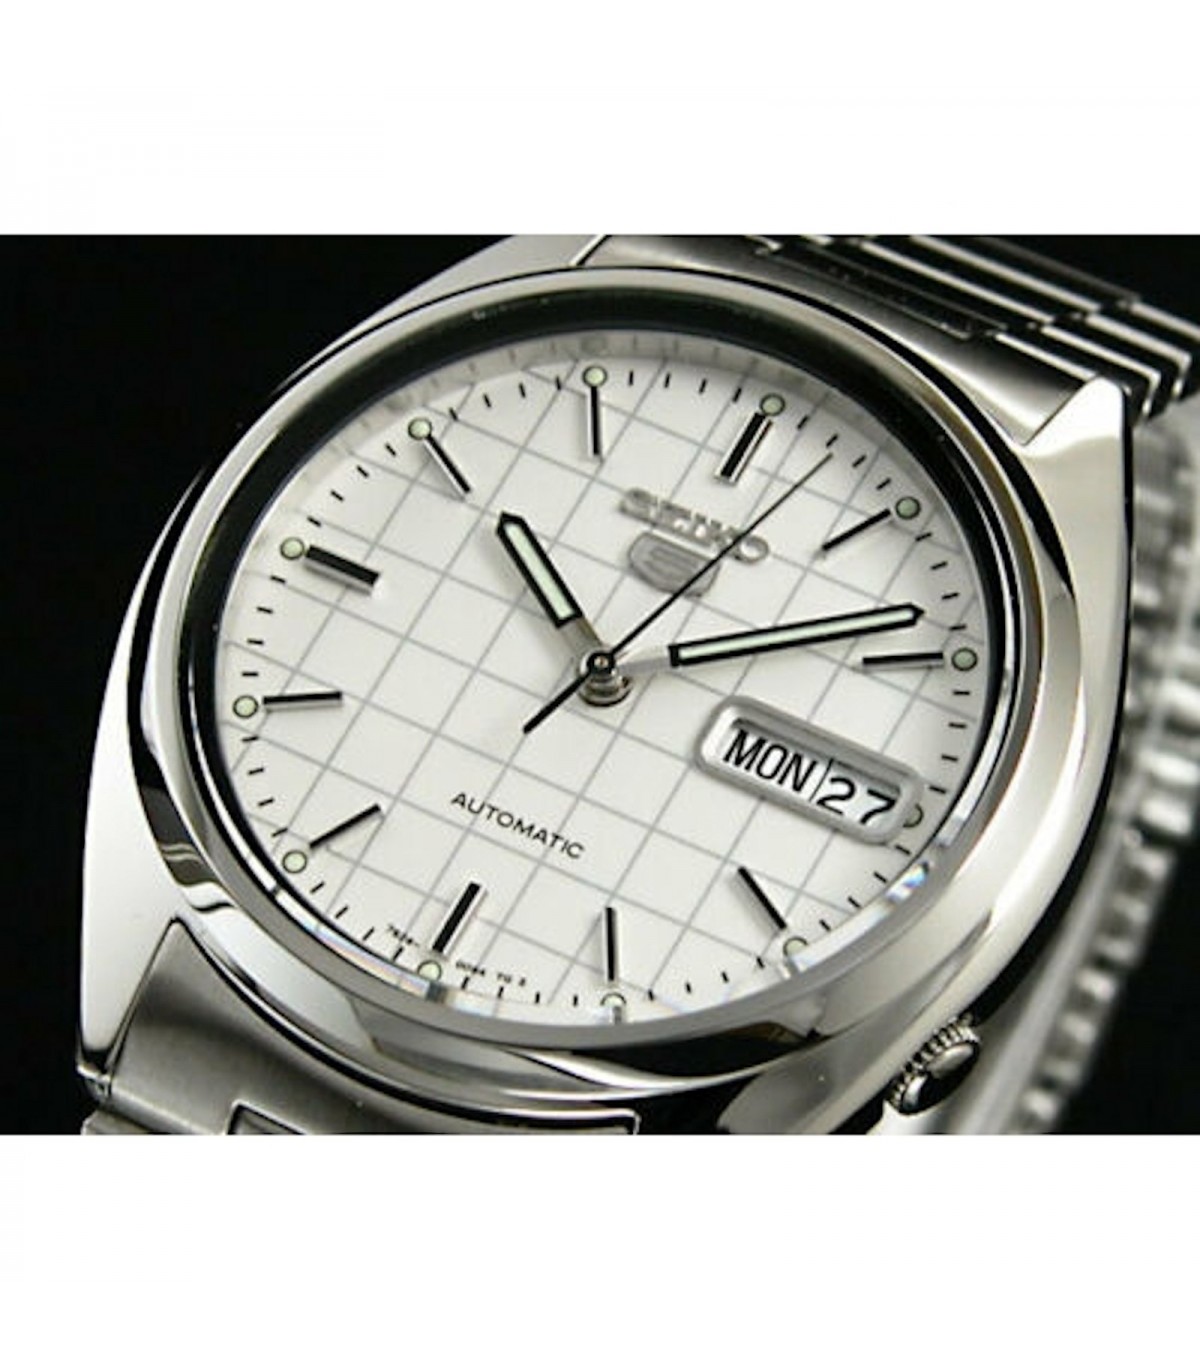 Reloj Seiko Classic